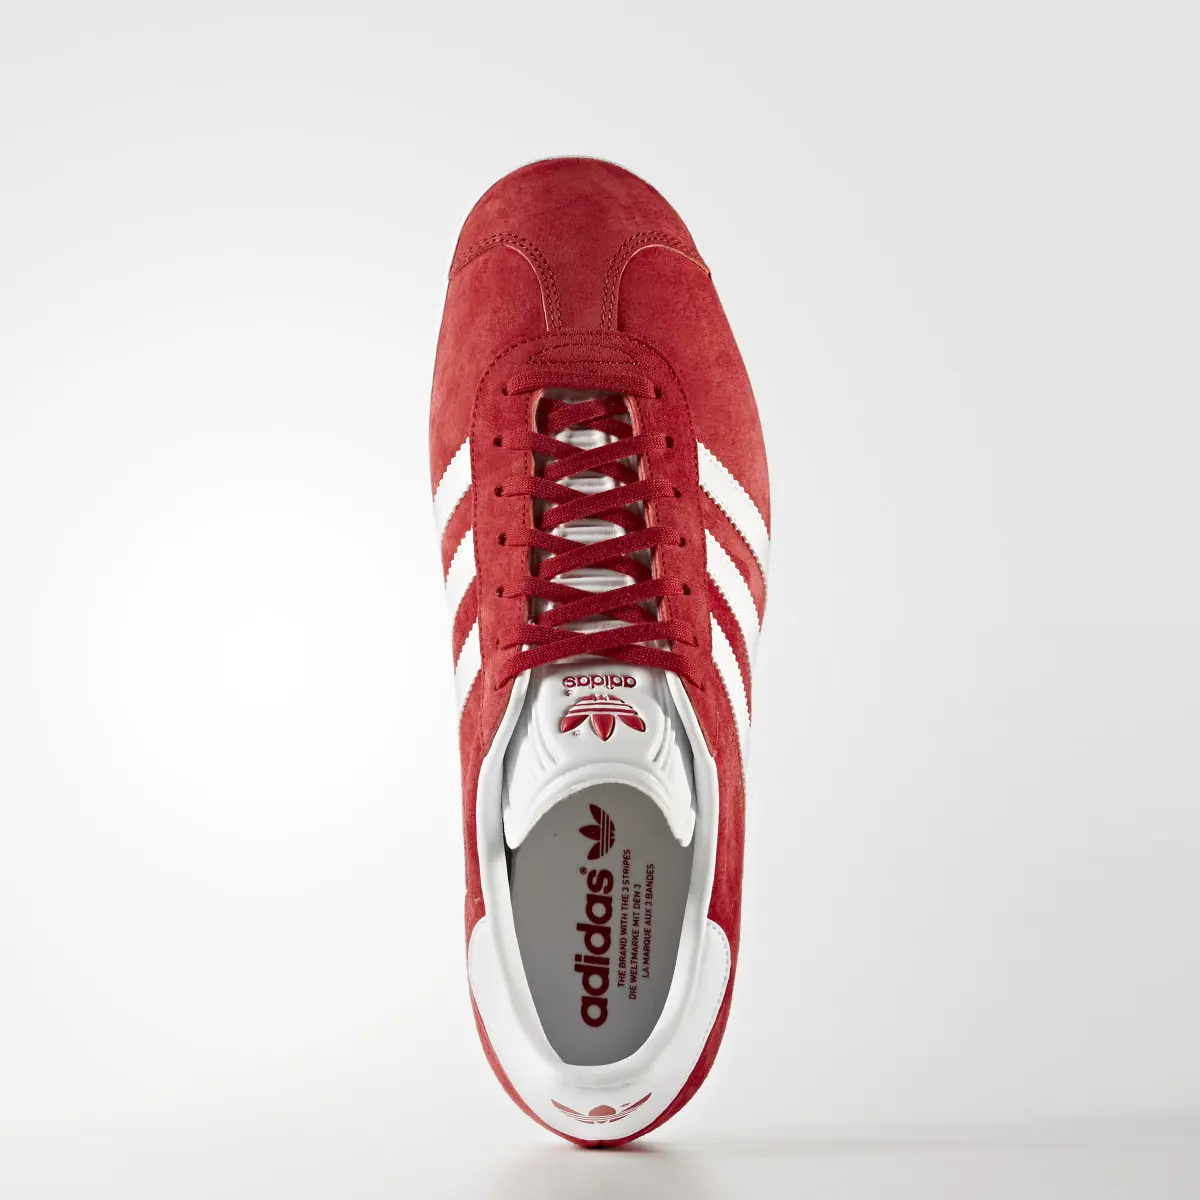 Adidas Gazelle Schuh. 2